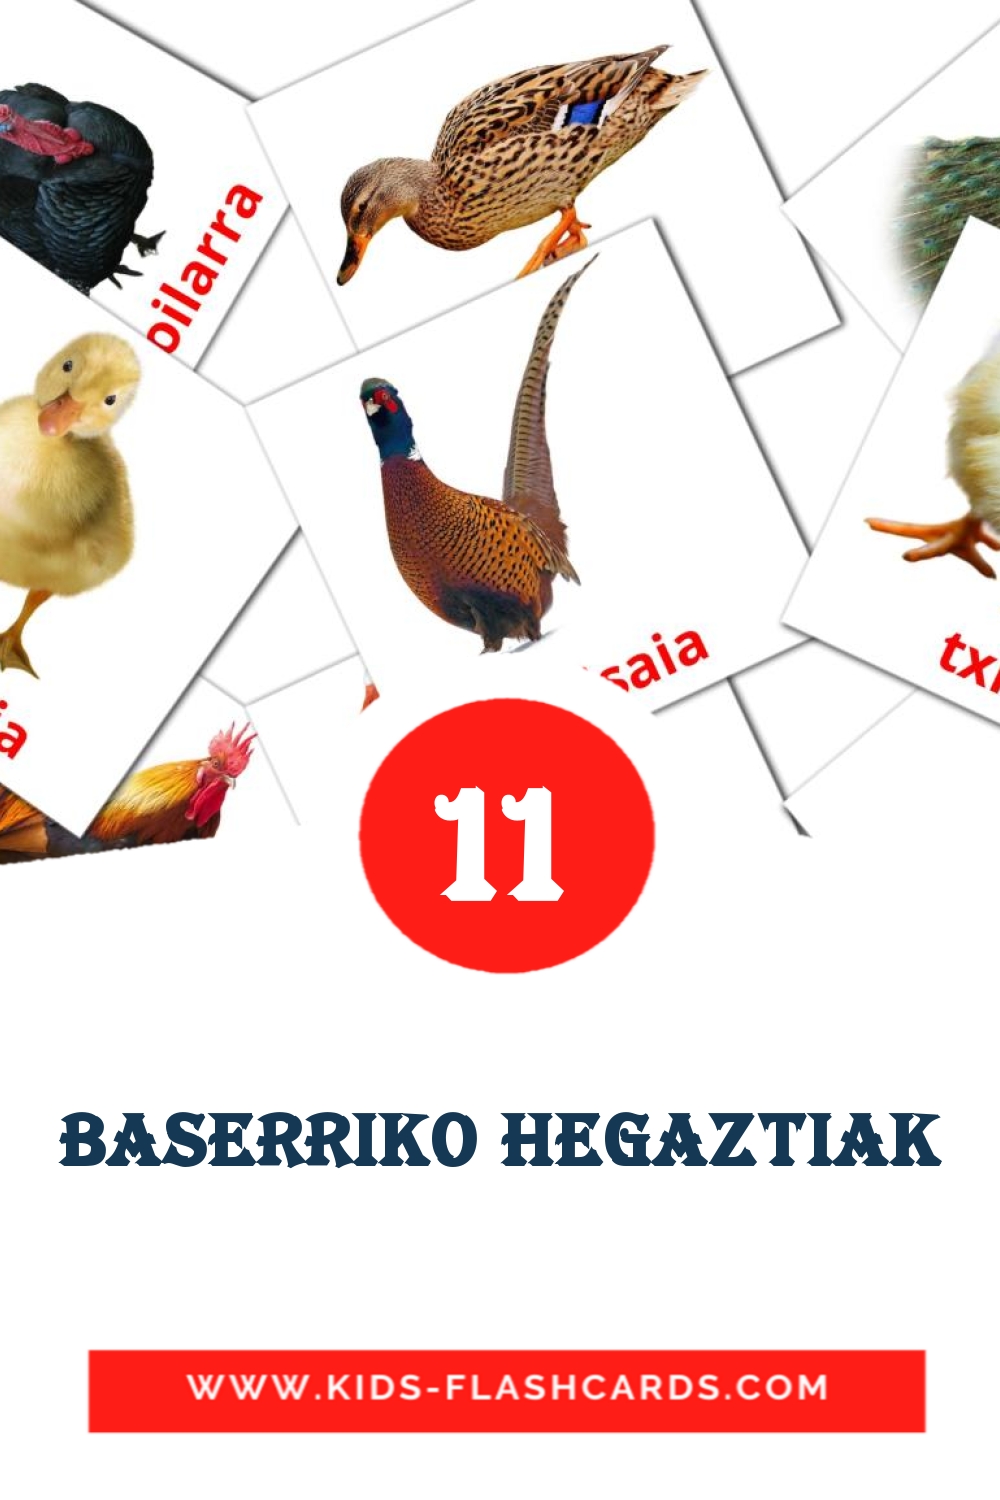 11 Cartões com Imagens de Baserriko hegaztiak para Jardim de Infância em basco